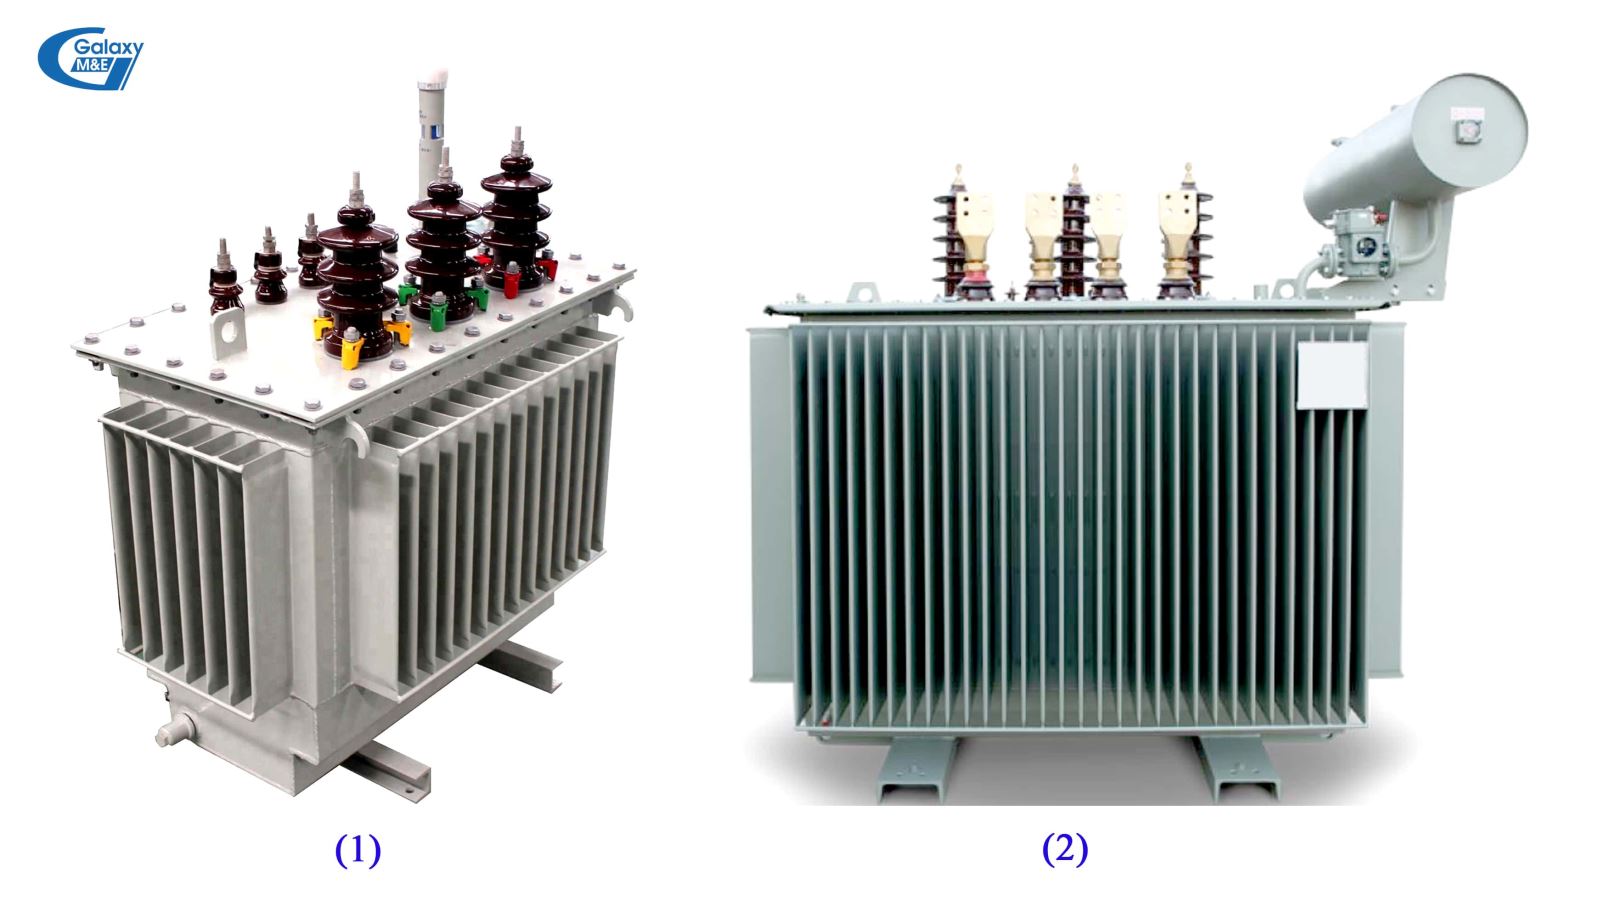 Máy biến áp kiểu kín (1) và máy biến áp kiểu hở (2).